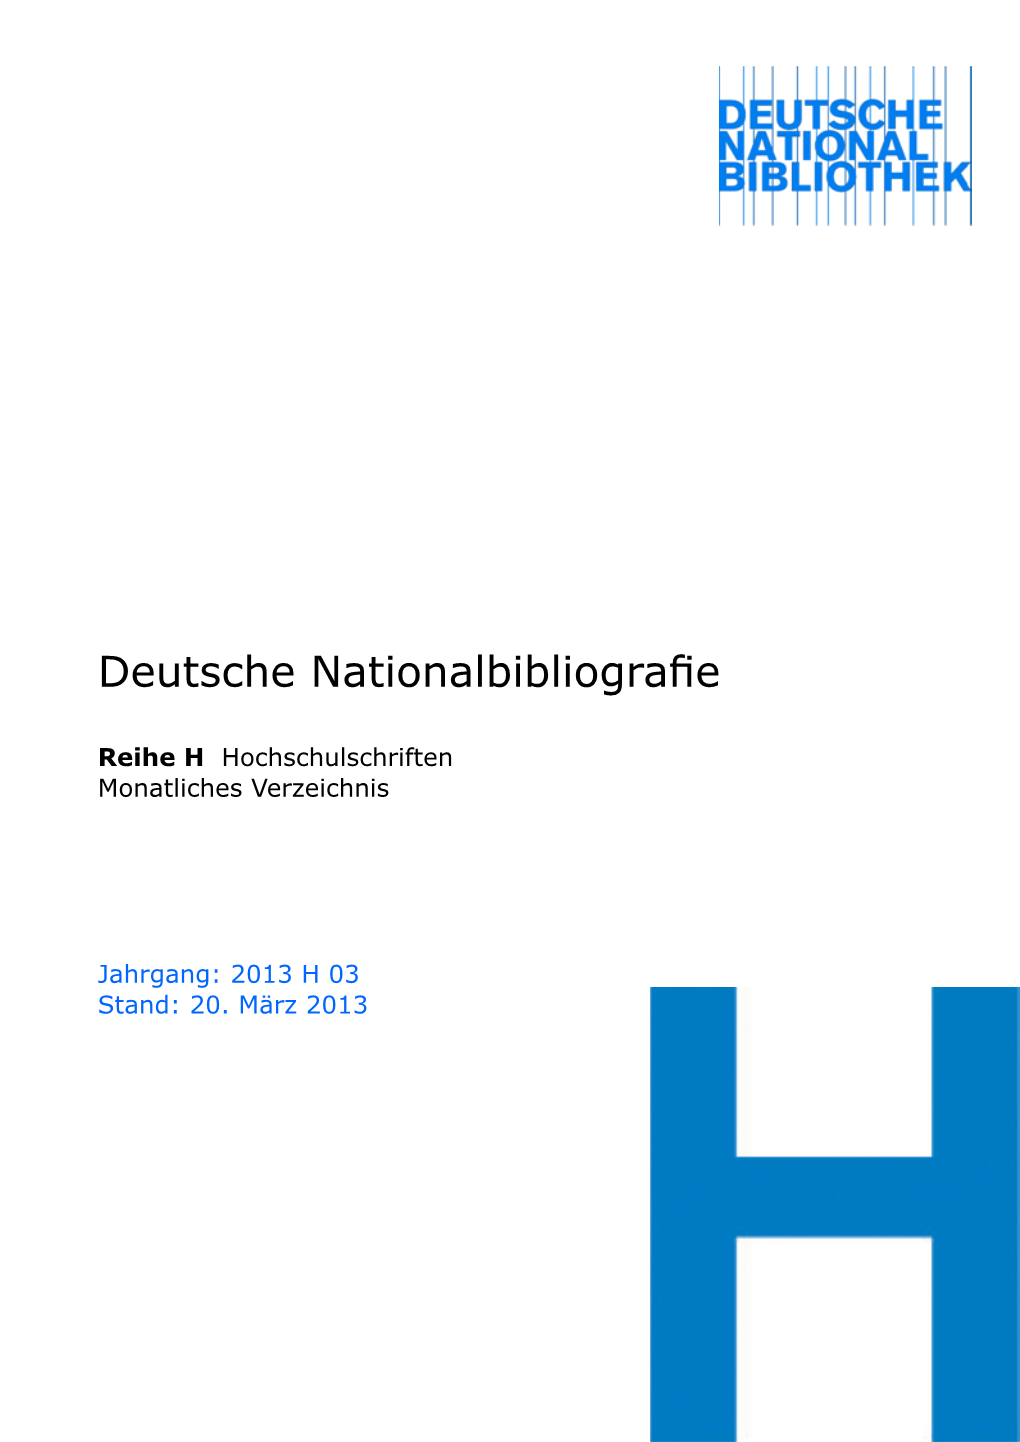 Deutsche Nationalbibliografie 2013 H 03